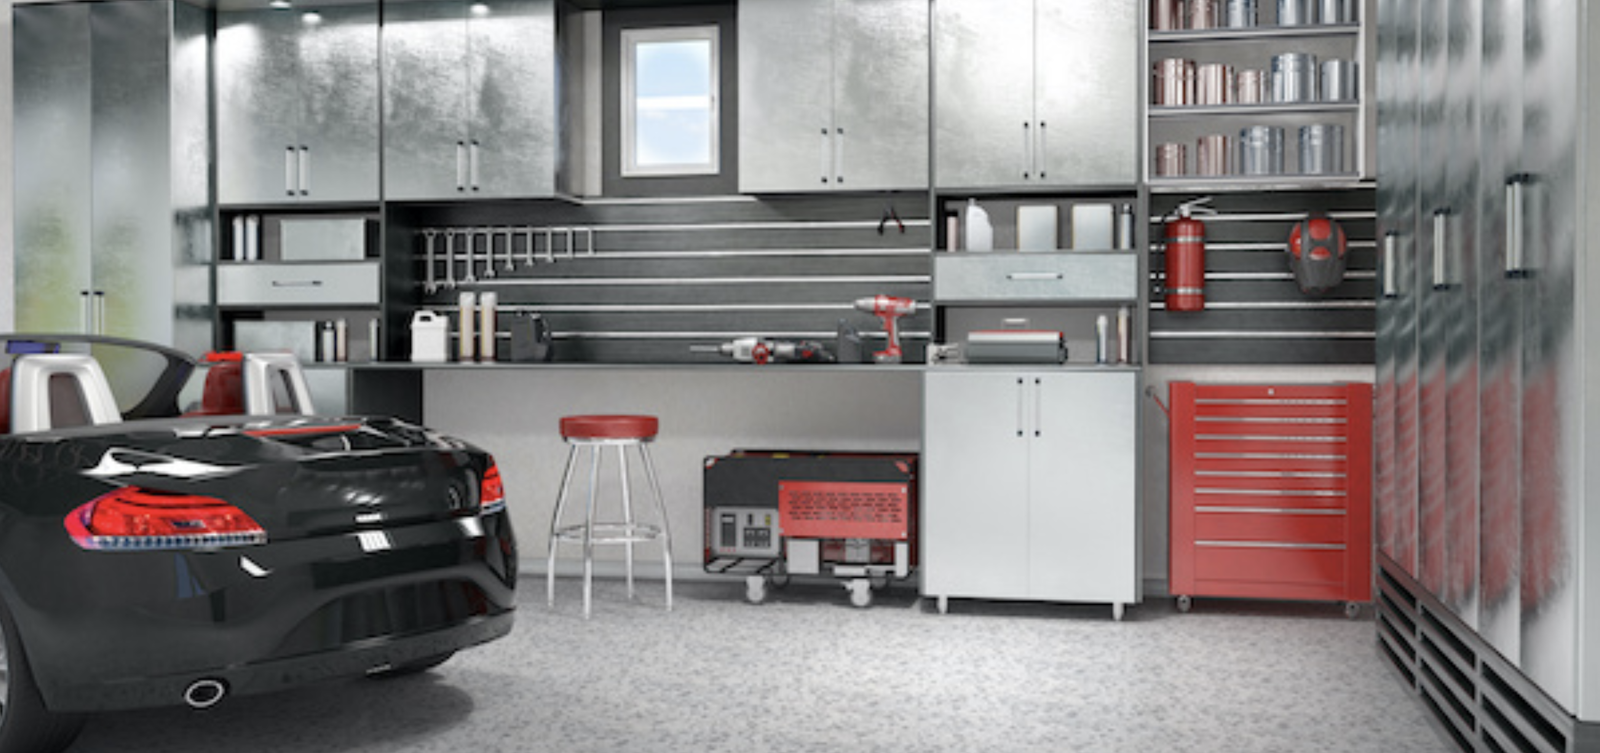 Modern garage interior with sleek storage, metal cabinets